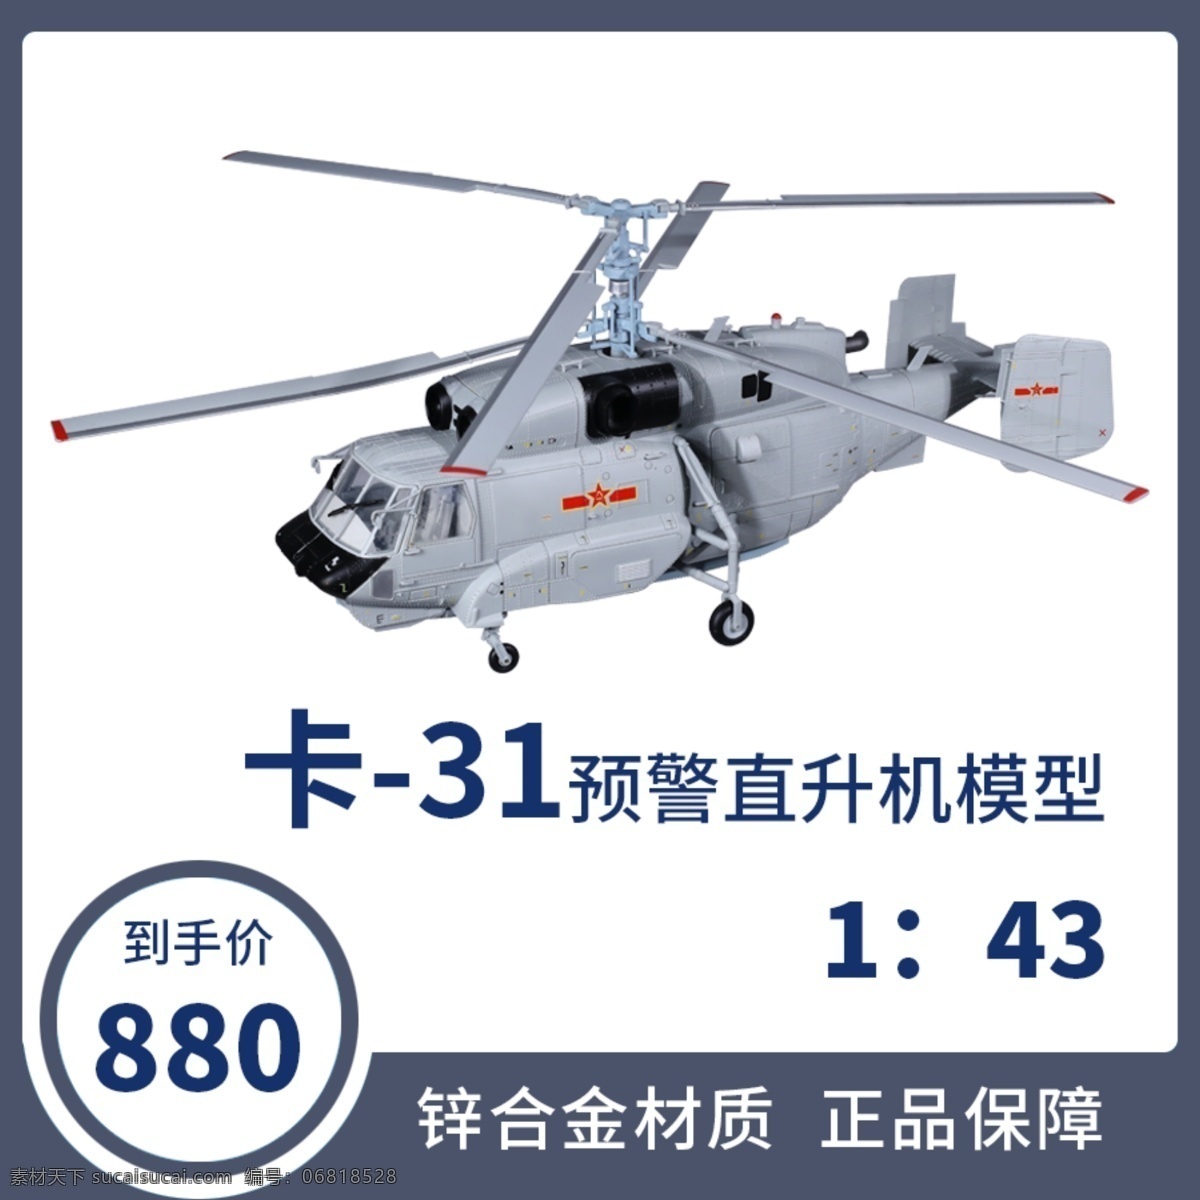 卡 31 预警 直升机 淘宝 主 图 卡31 主图 banner 淘宝界面设计 淘宝装修模板